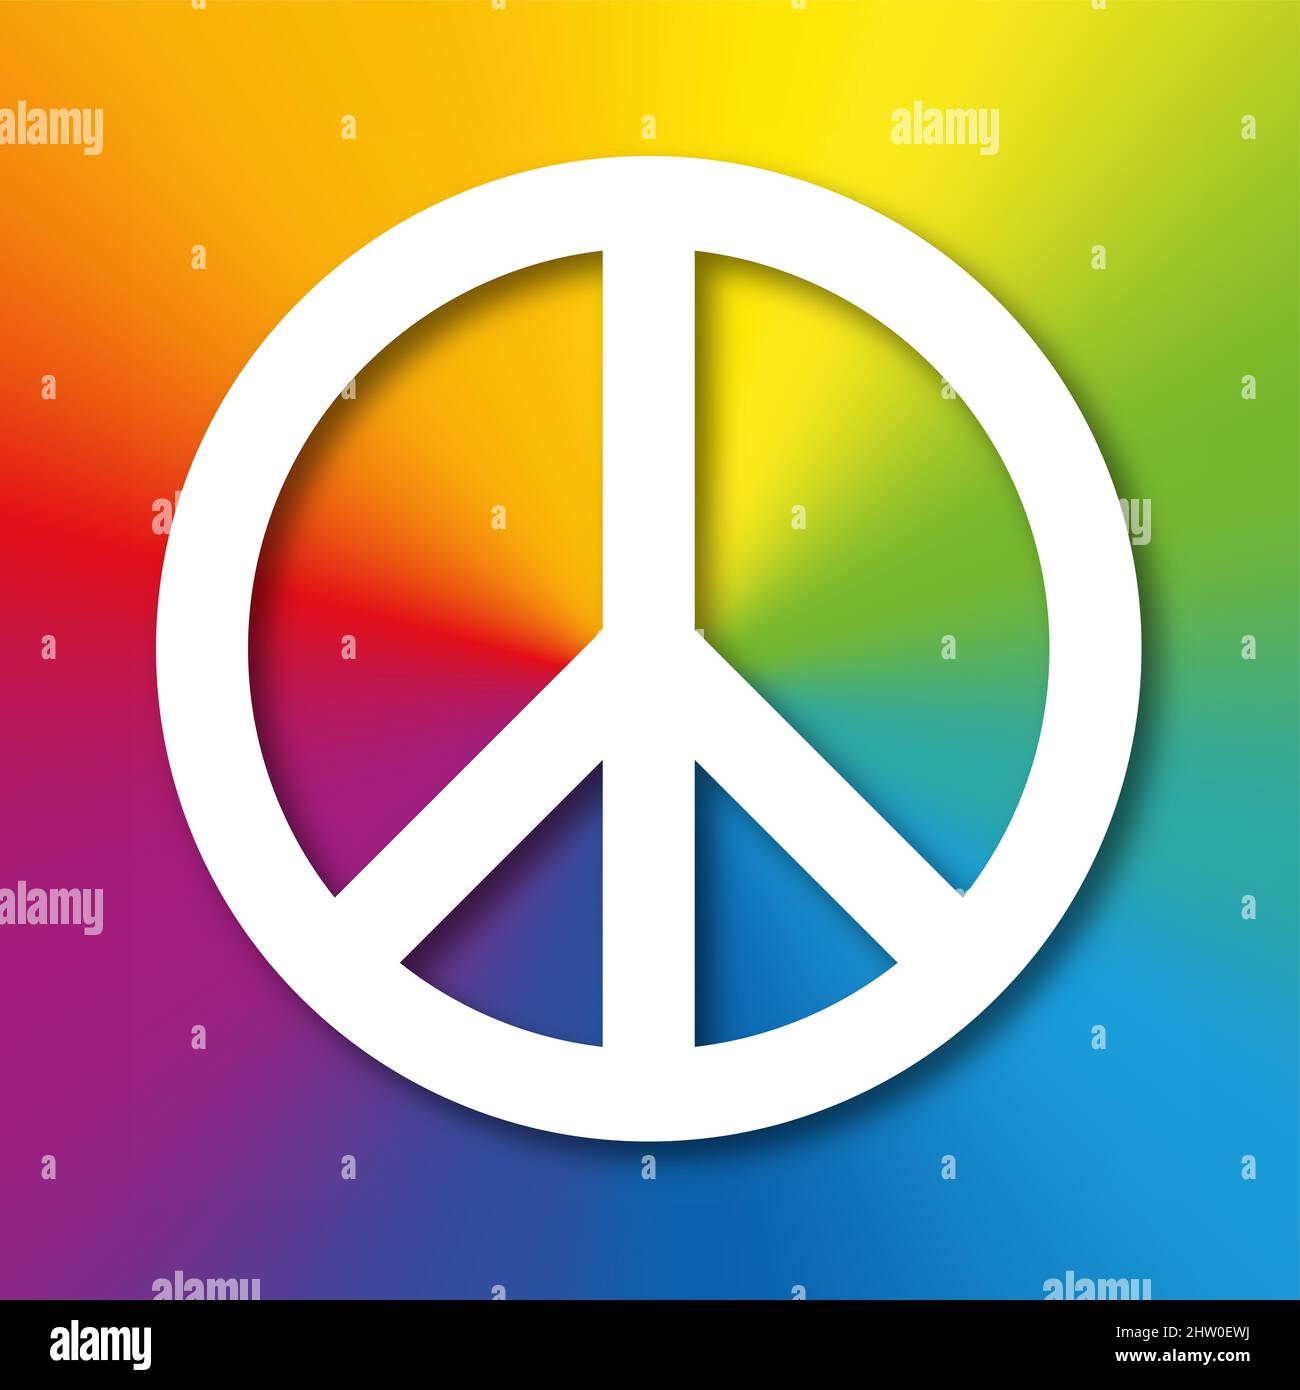 Weißes Friedenssymbol mit Schatten, auf einem regenbogenfarbenen Hintergrund. Ursprünglich für die nukleare Abrüstungsbewegung konzipiert, die heute als Friedenszeichen bekannt ist. Stockfoto